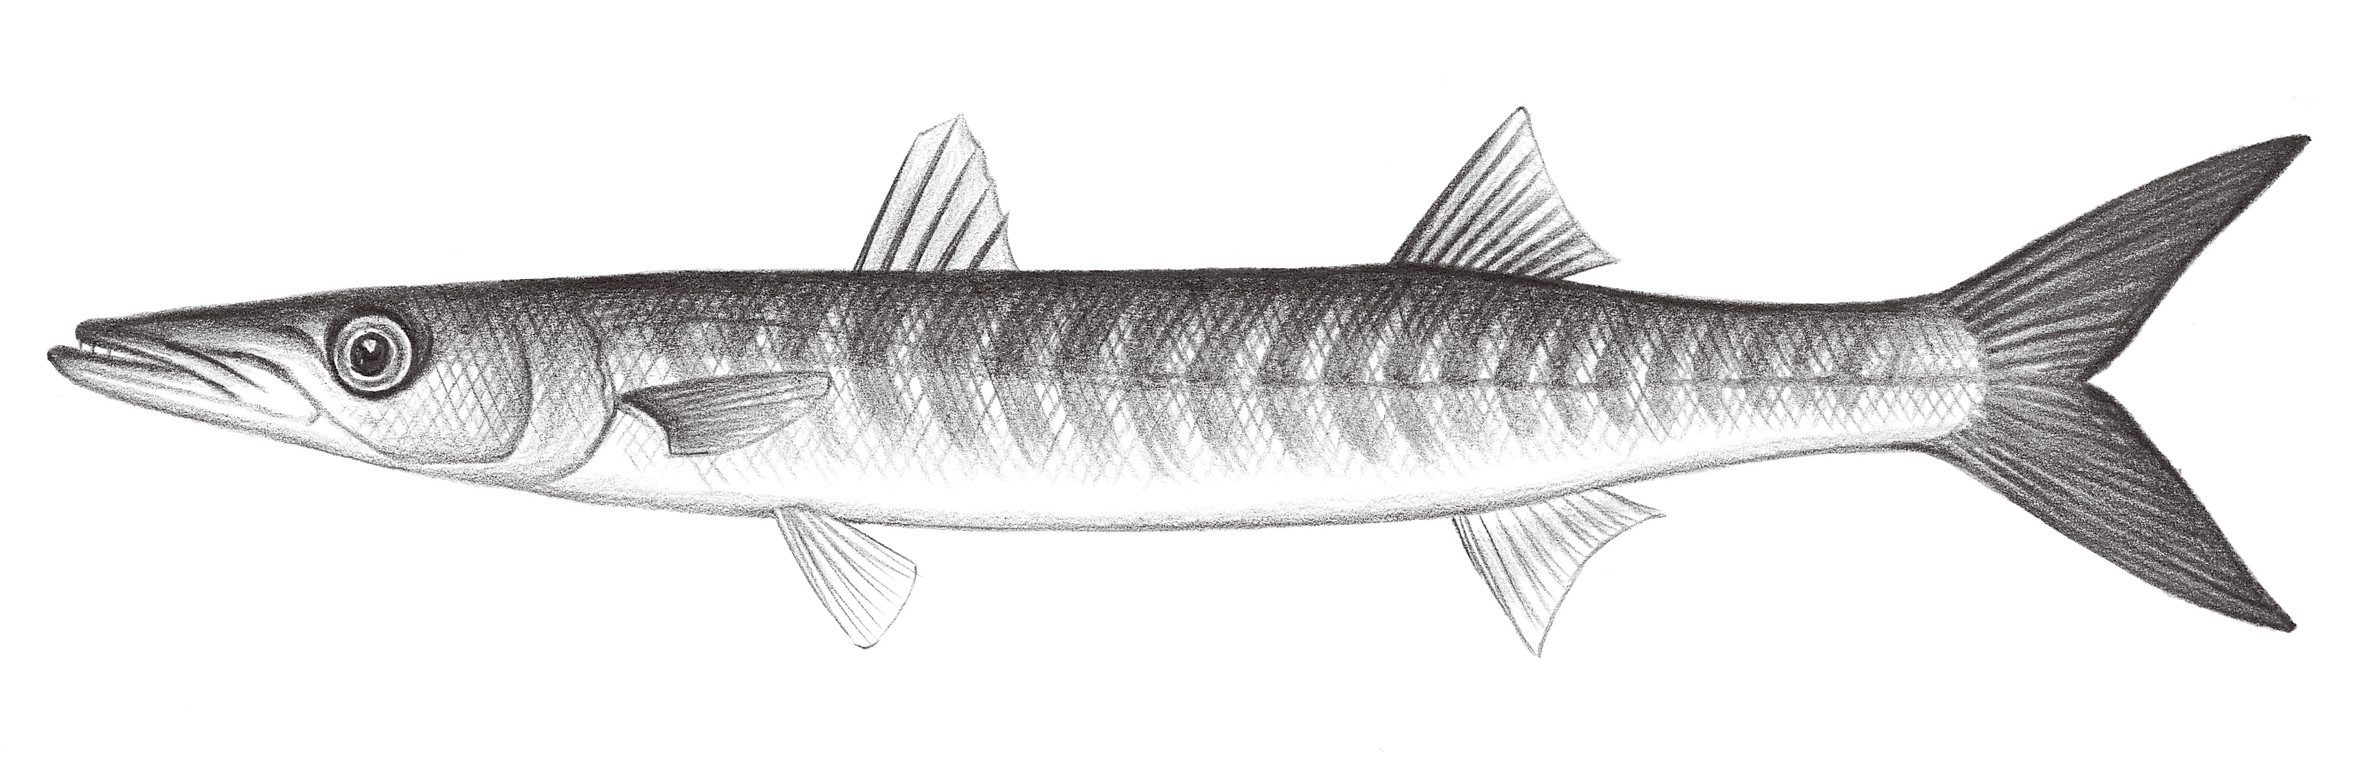 2327.	布氏金梭魚 Sphyraena putnamae Jordan &Seale, 1905